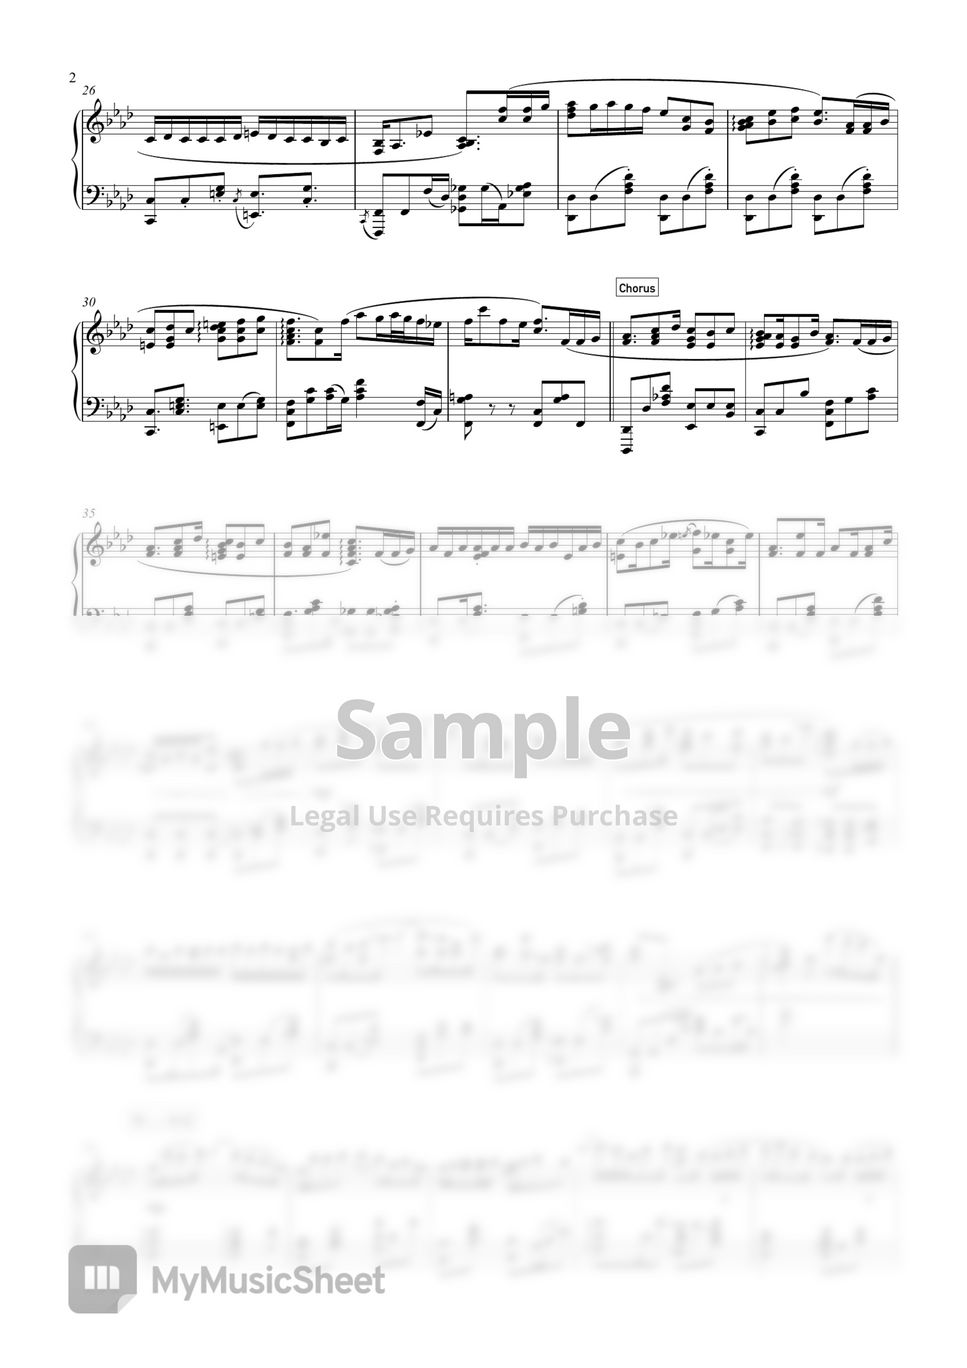 YOASOBI - RGB (Jazz Waltz) by SLSMusic